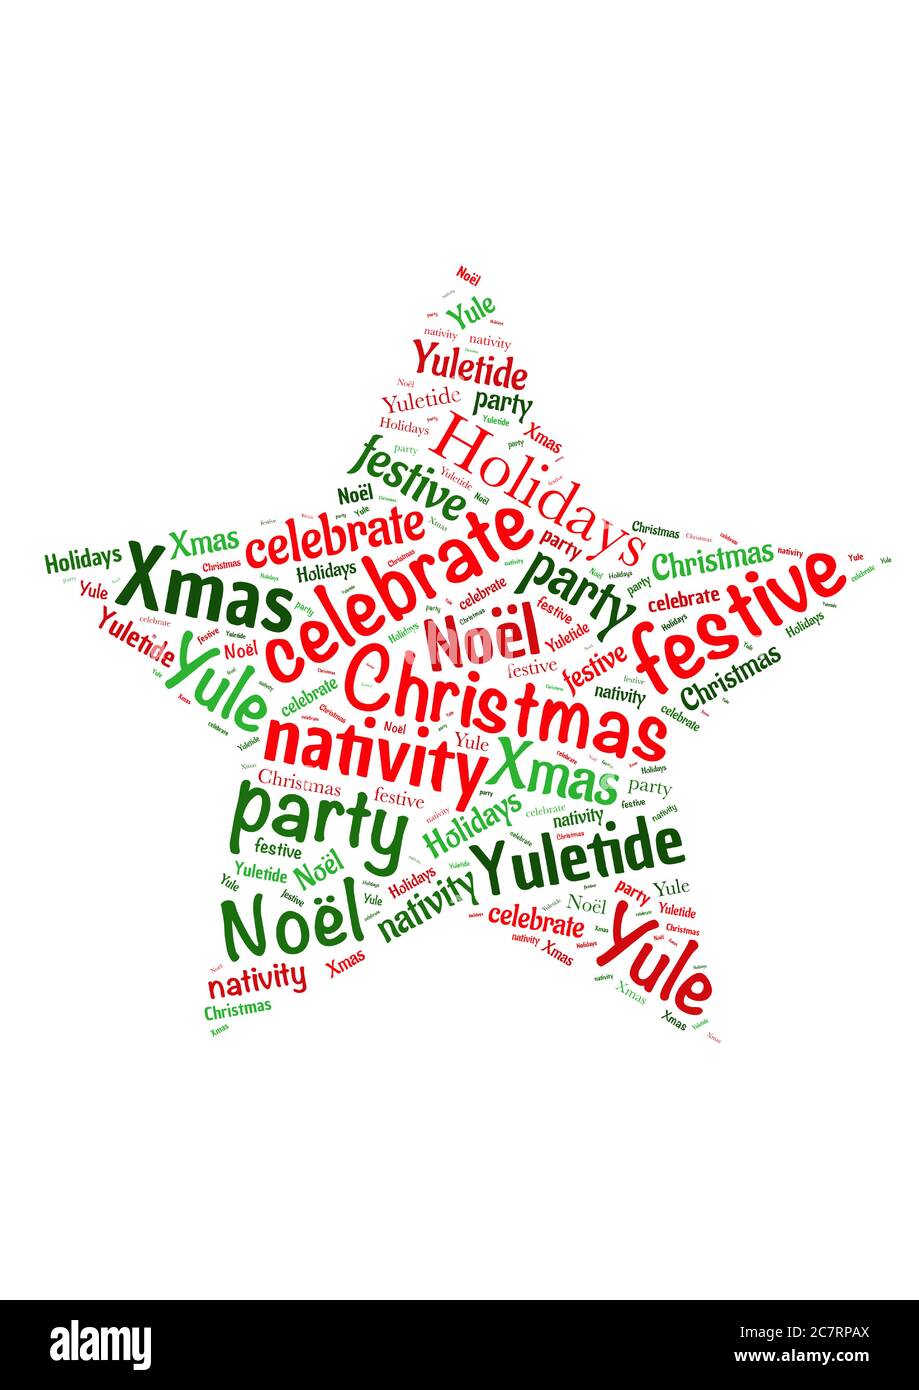 Illustration d'un nuage de mots avec des mots représentant les vacances de Noël Illustration de Vecteur